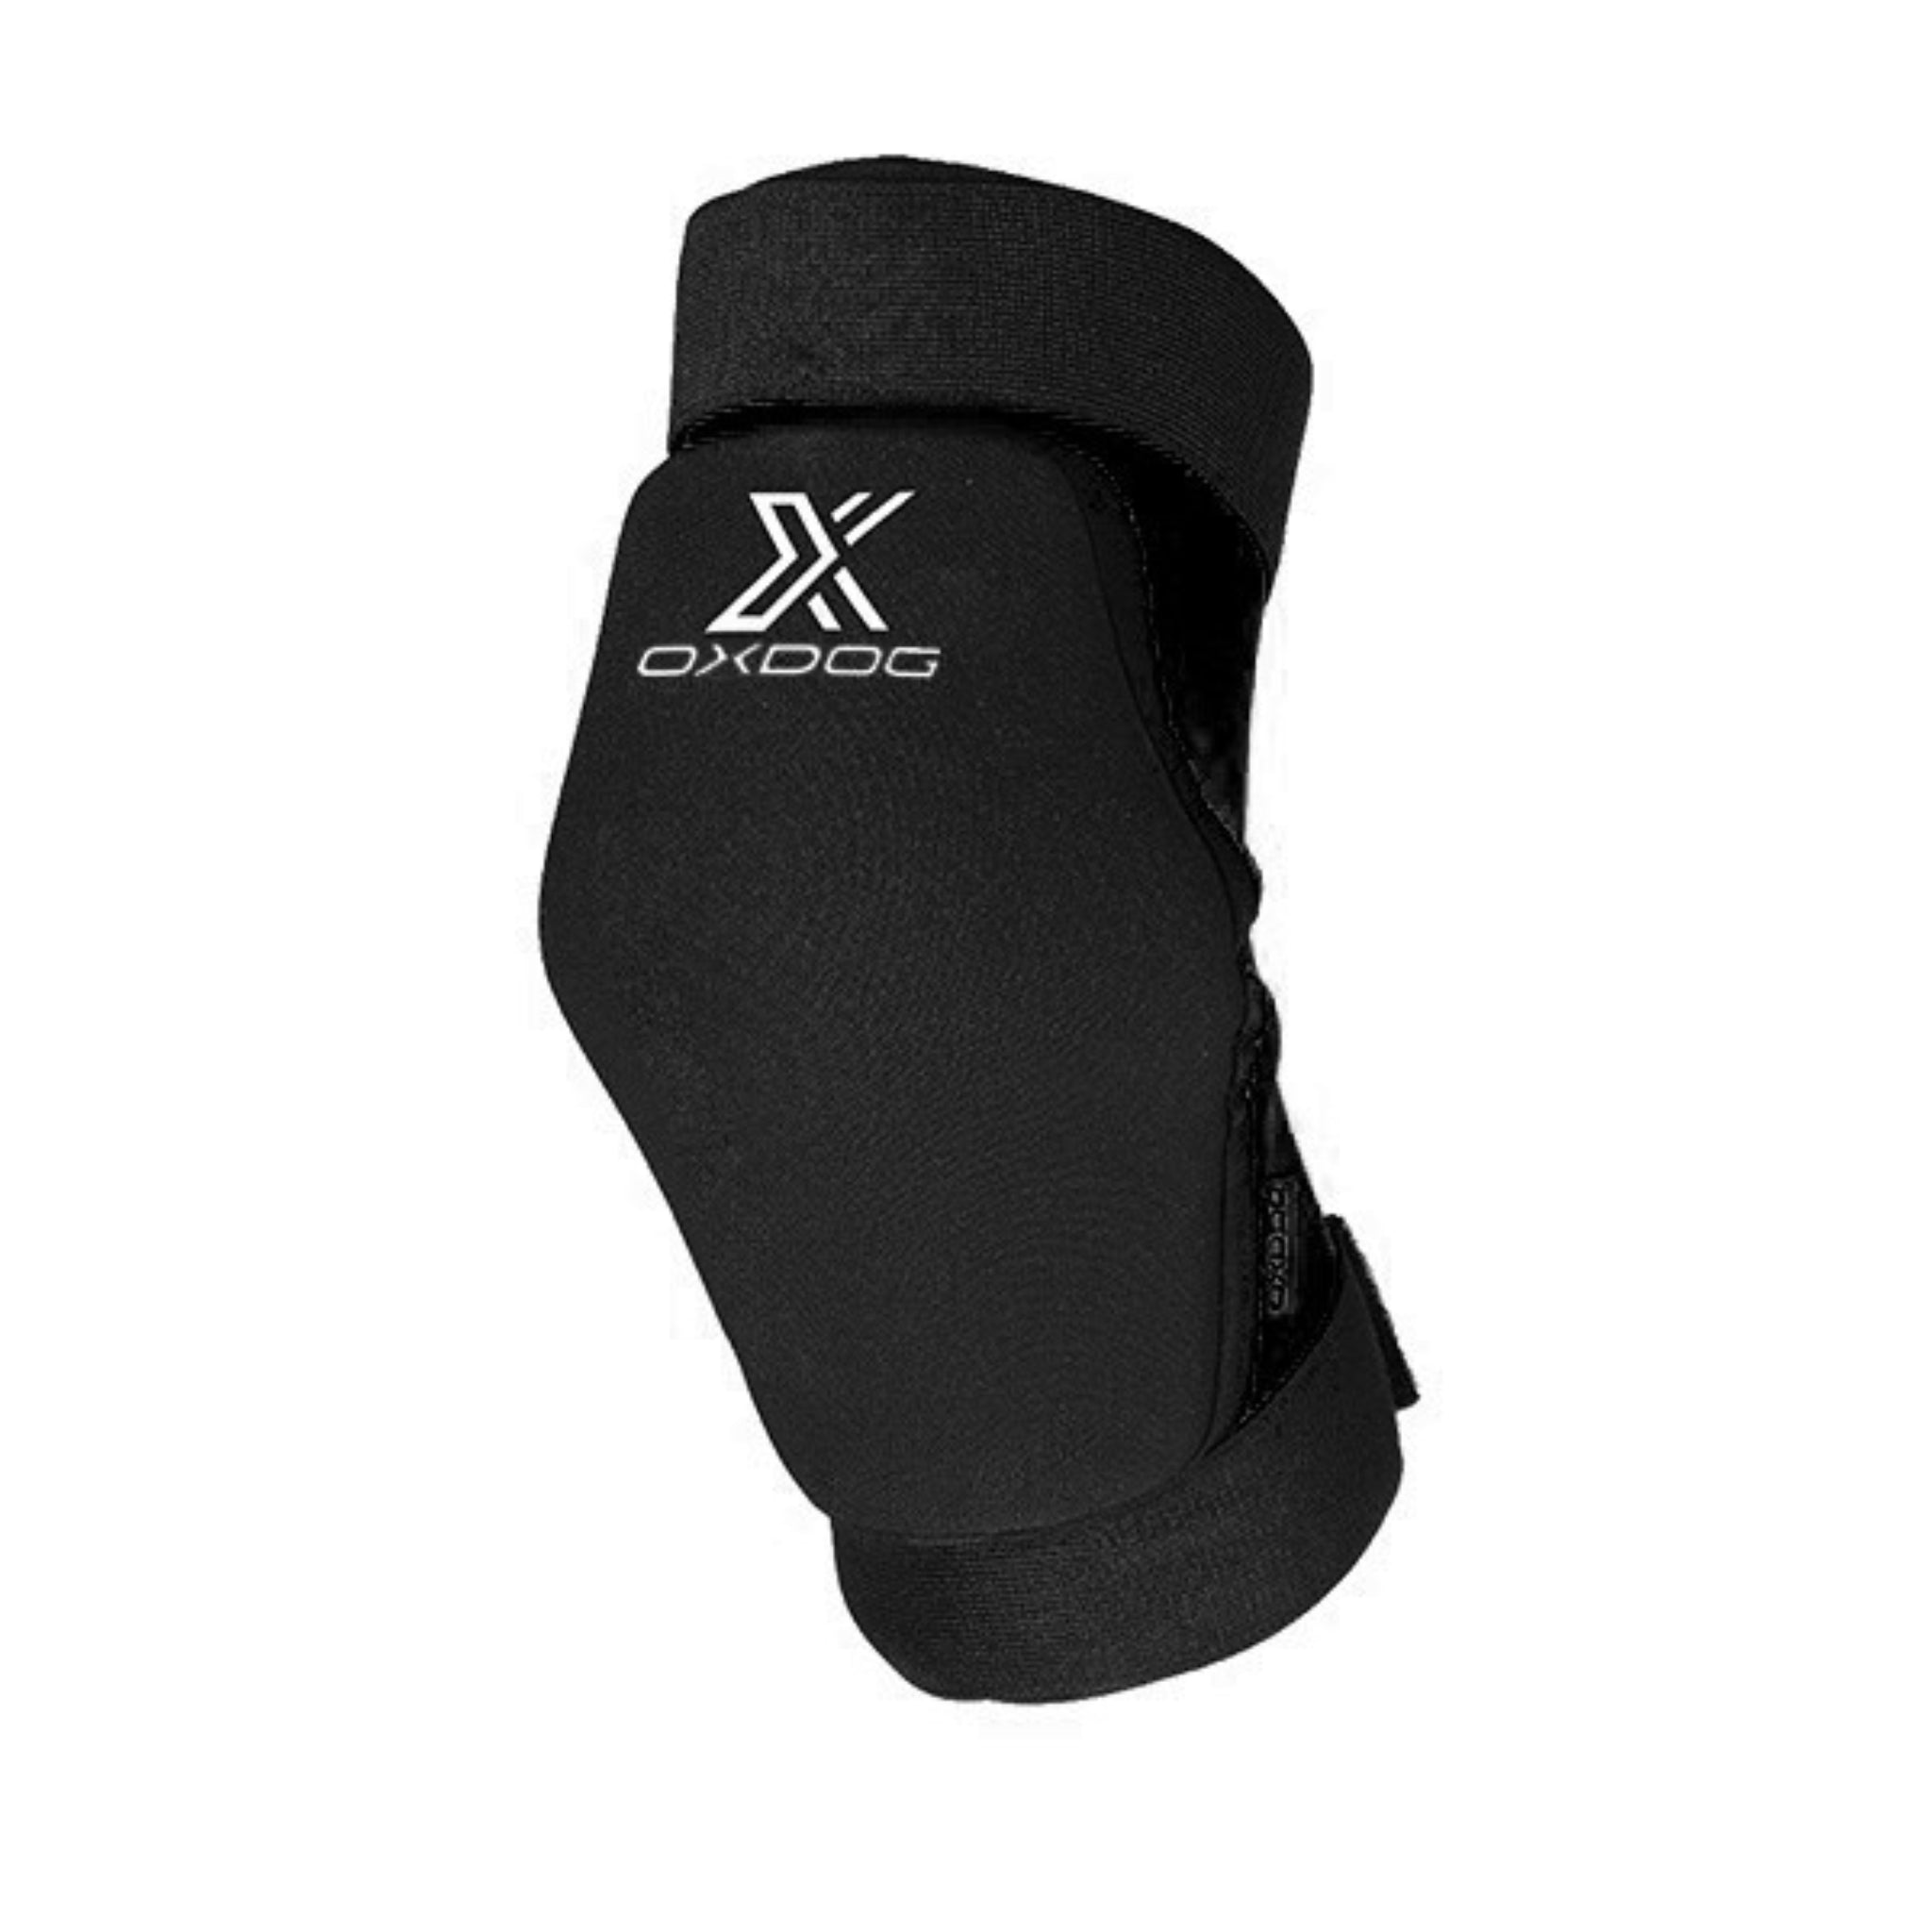 Oxdog Xguard Kneeguard Medium SR Black, Svarta knäskydd för seniorer från Oxdog